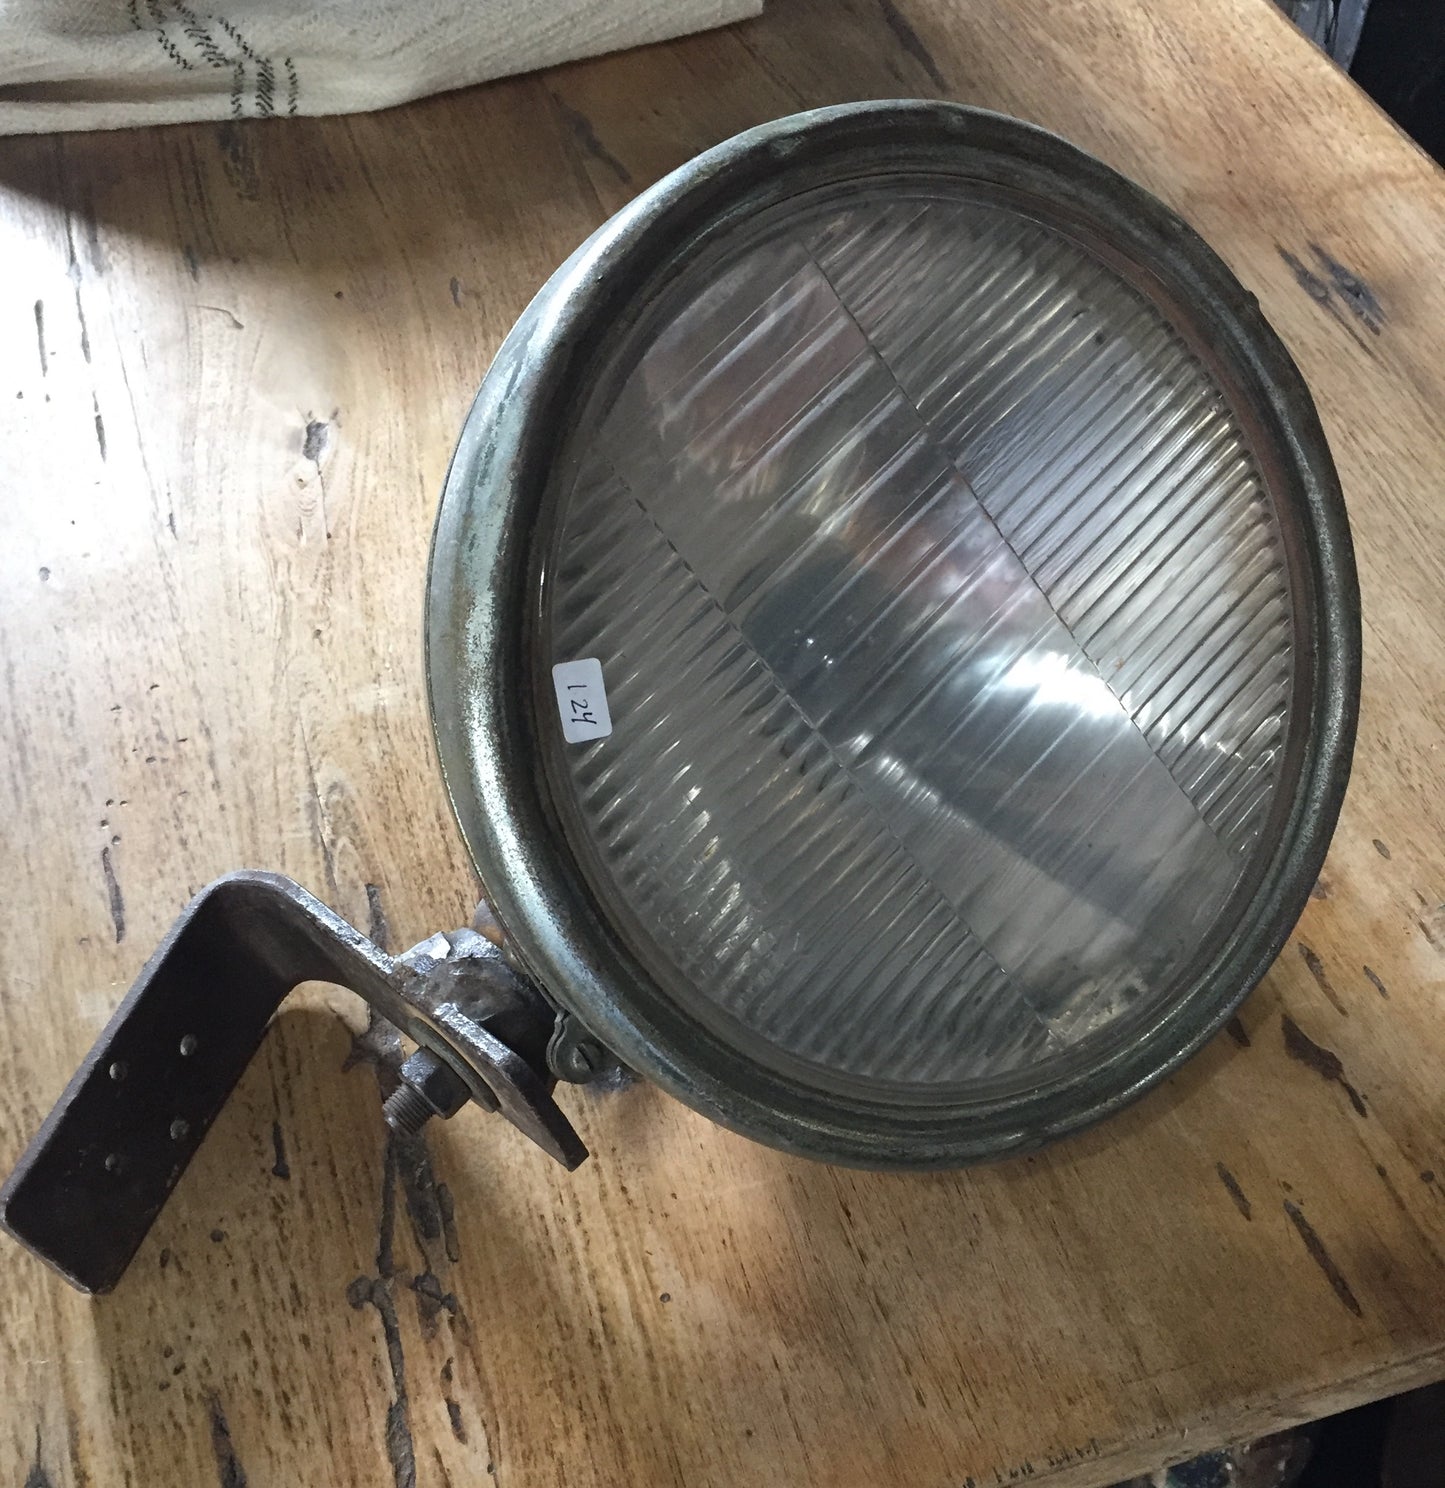 Vintage Headlight